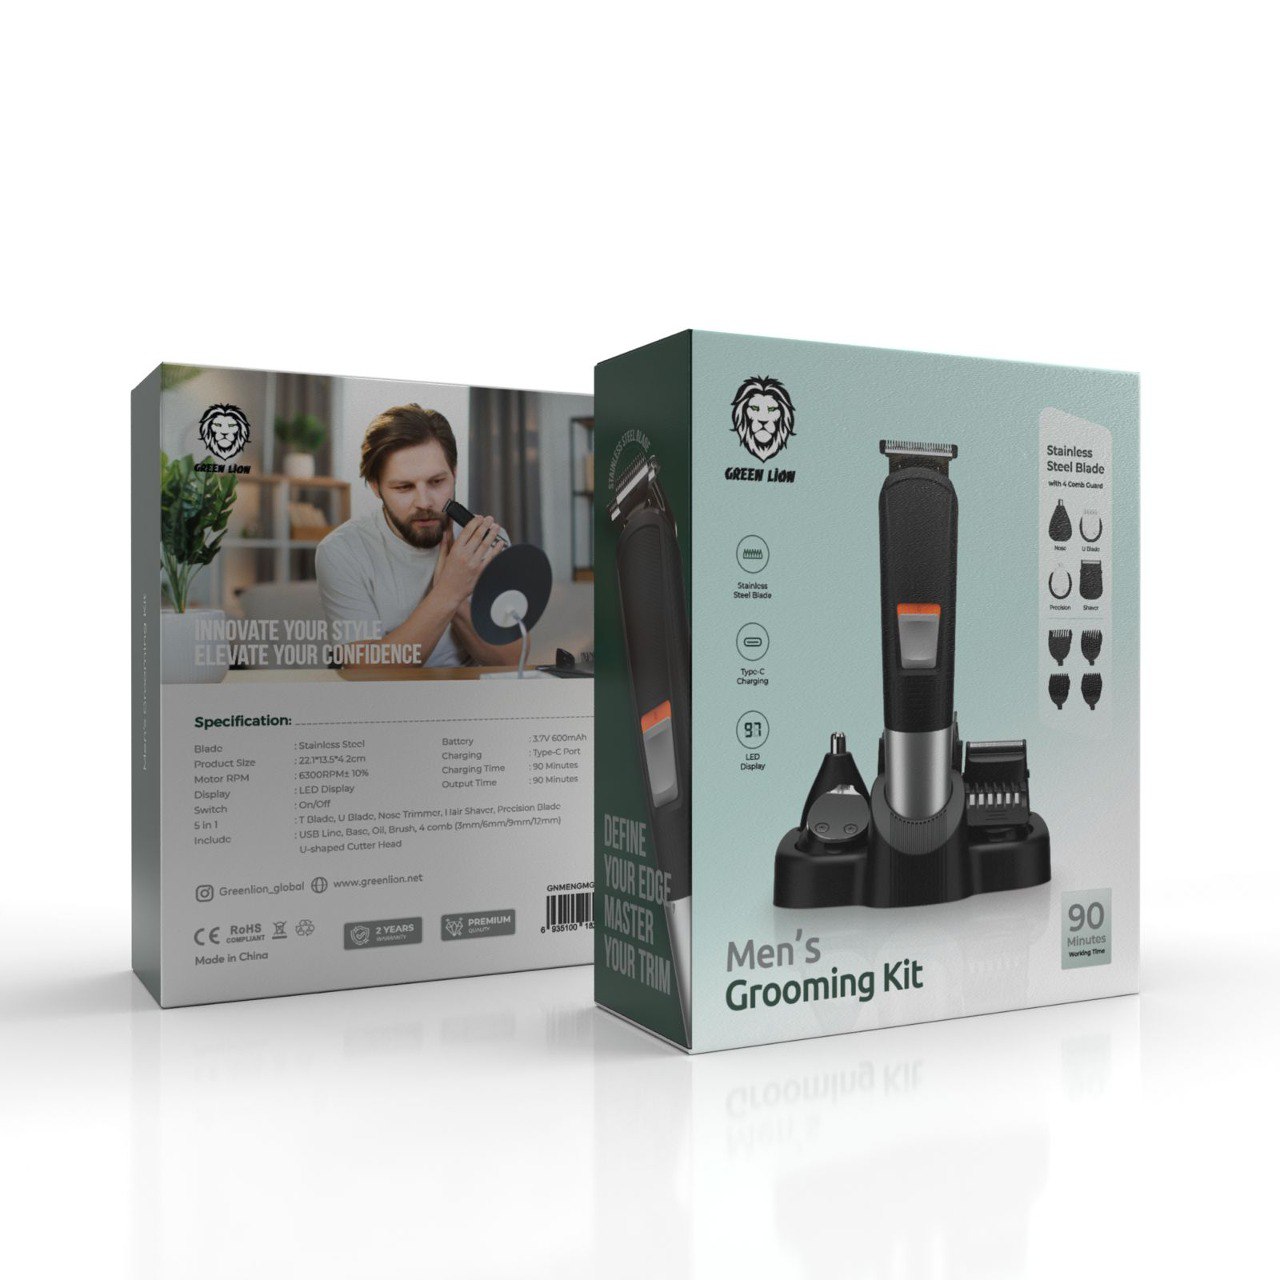 Green Men's Grooming Kit